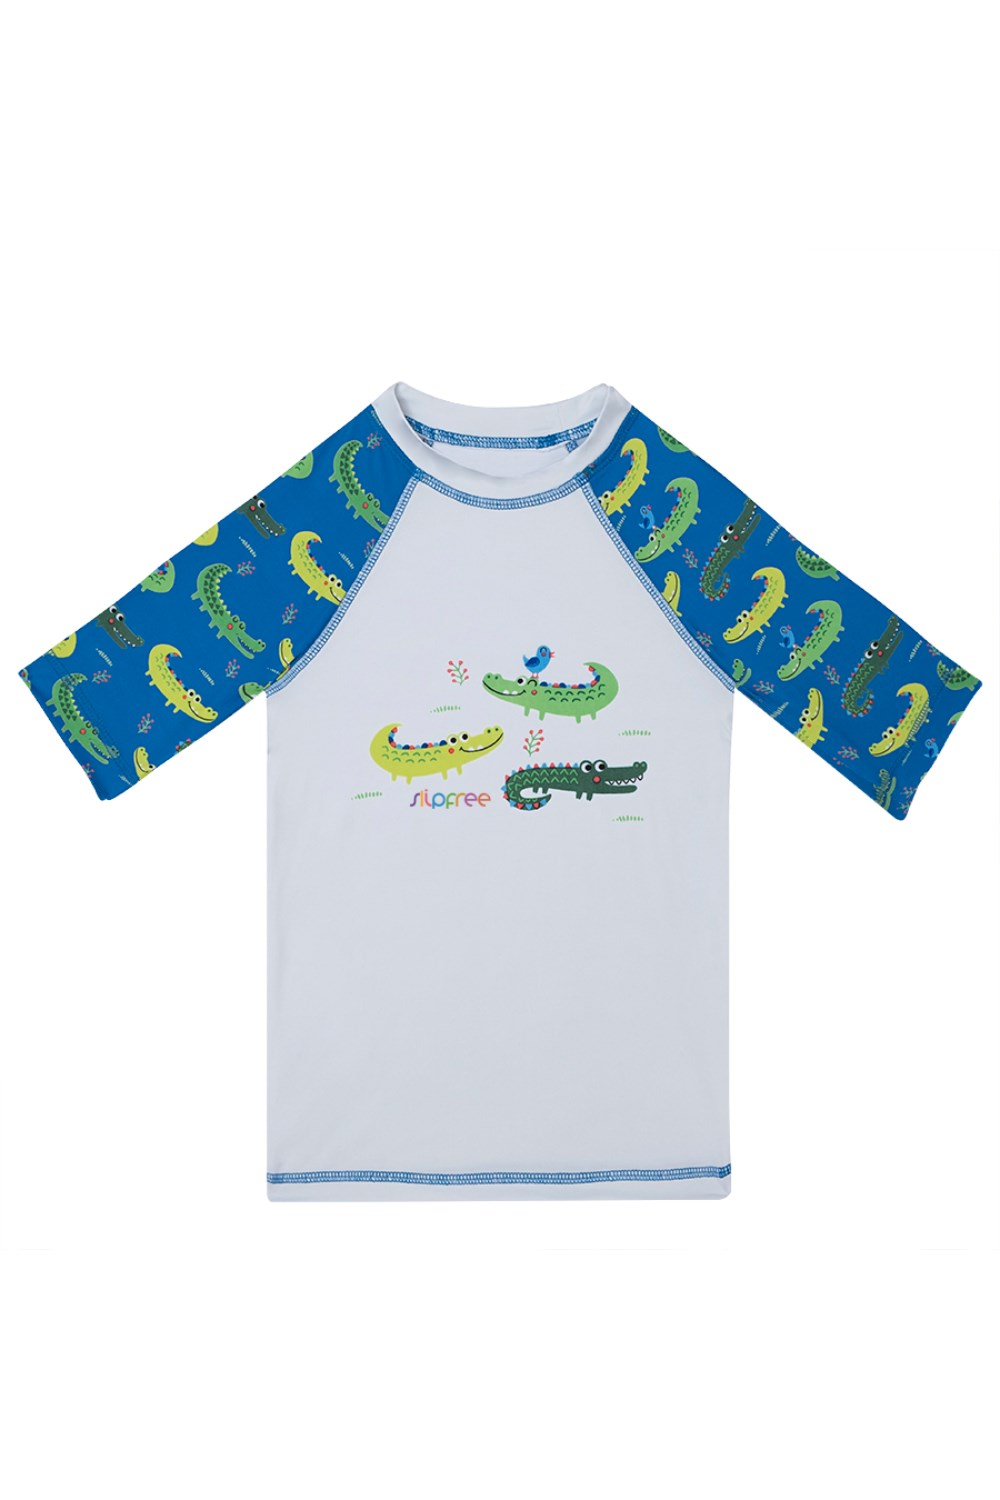 Alligator Kids UPF 50+ Rash Vest -